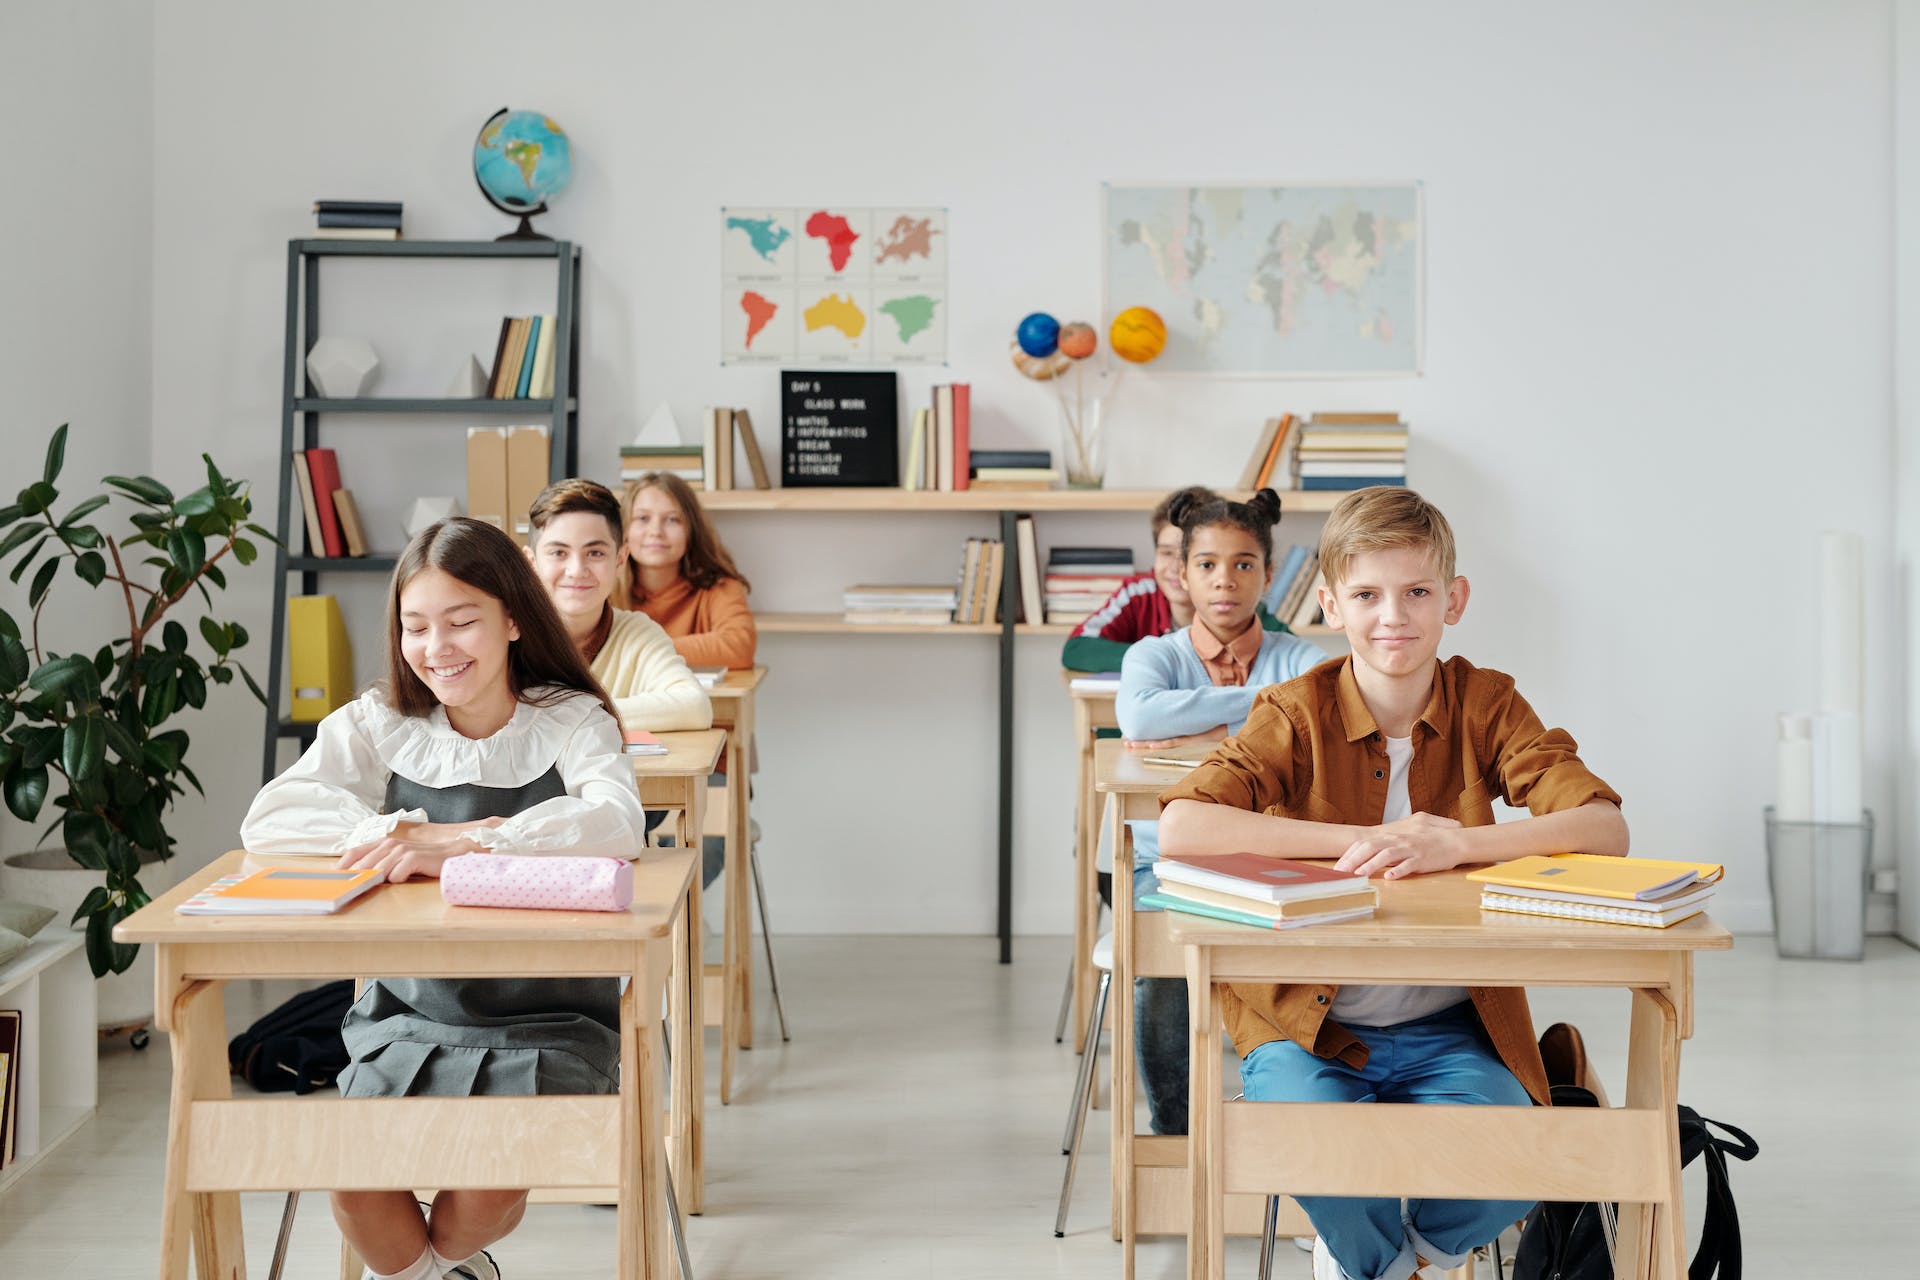 Niños sentados en una clase | Fuente: Pexels